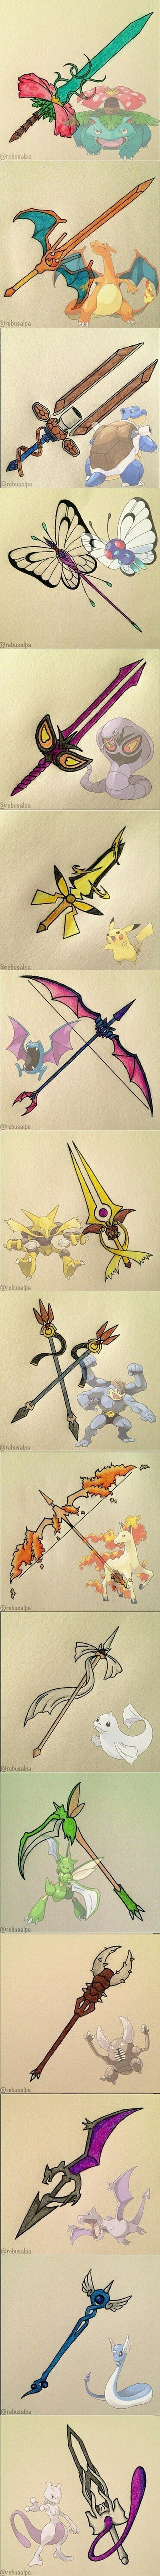 Armas basadas en Pokémon, ¡COMO MOLAN!